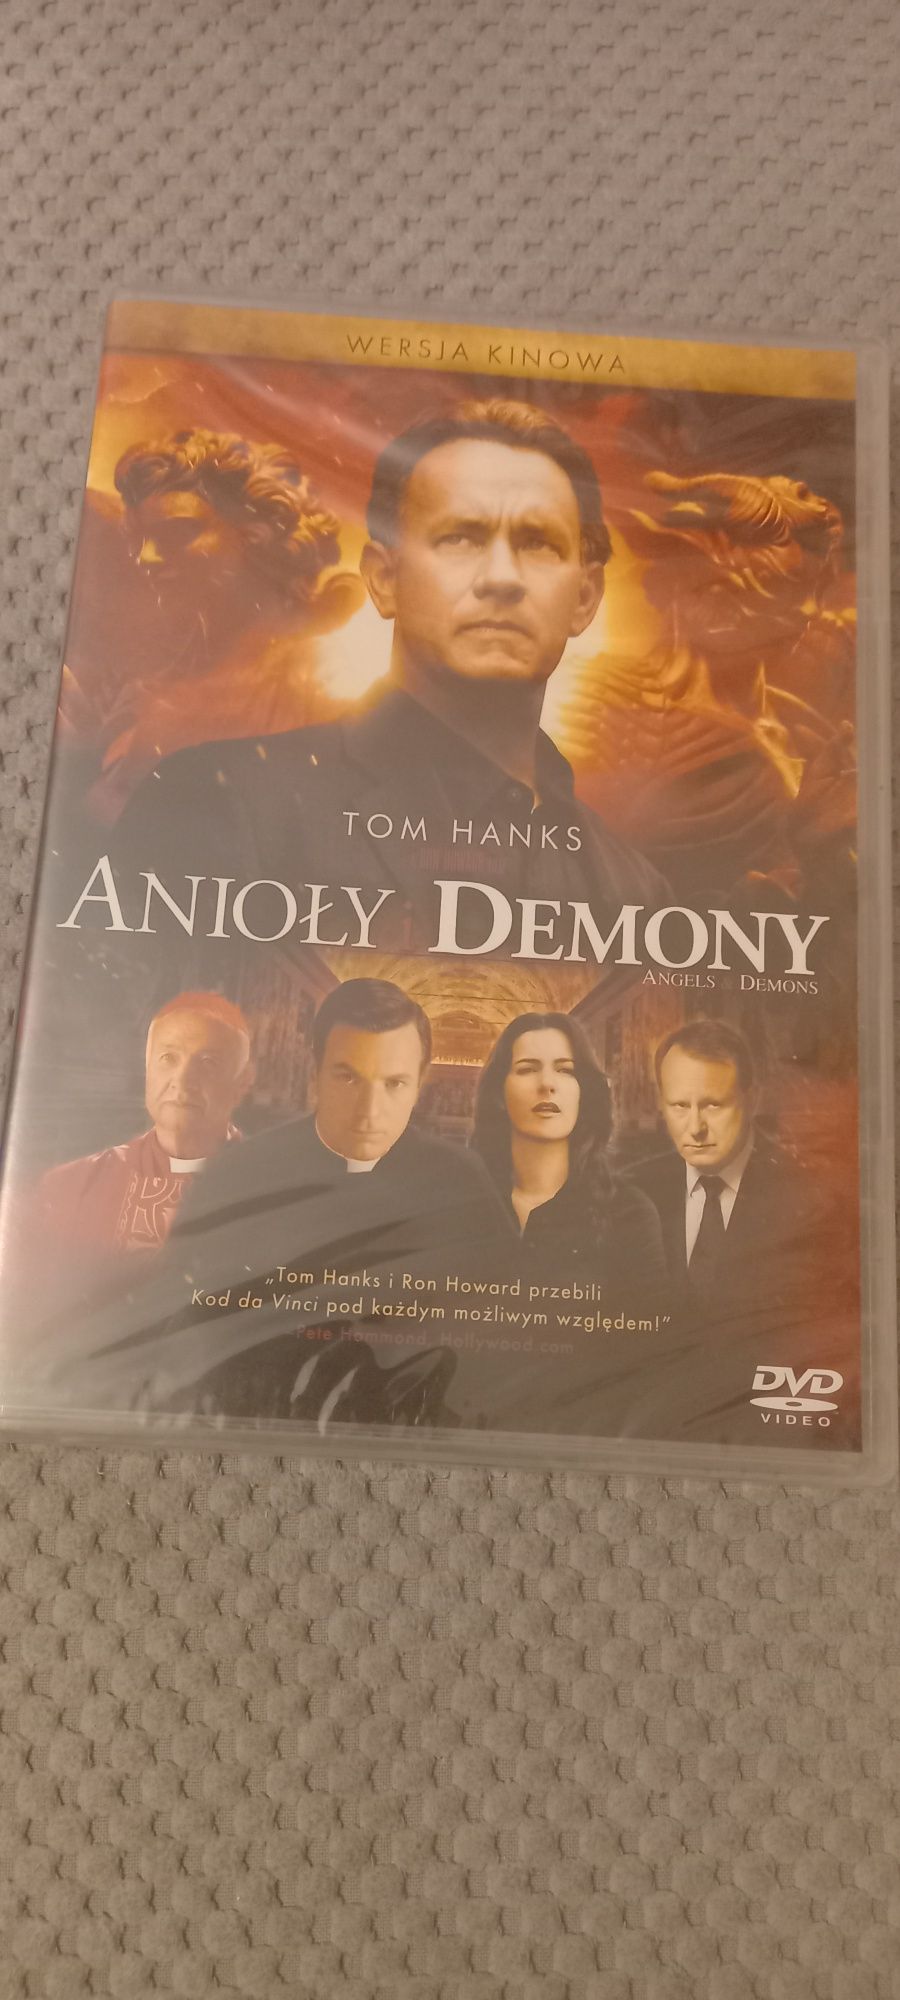 Anioły i demony dvd